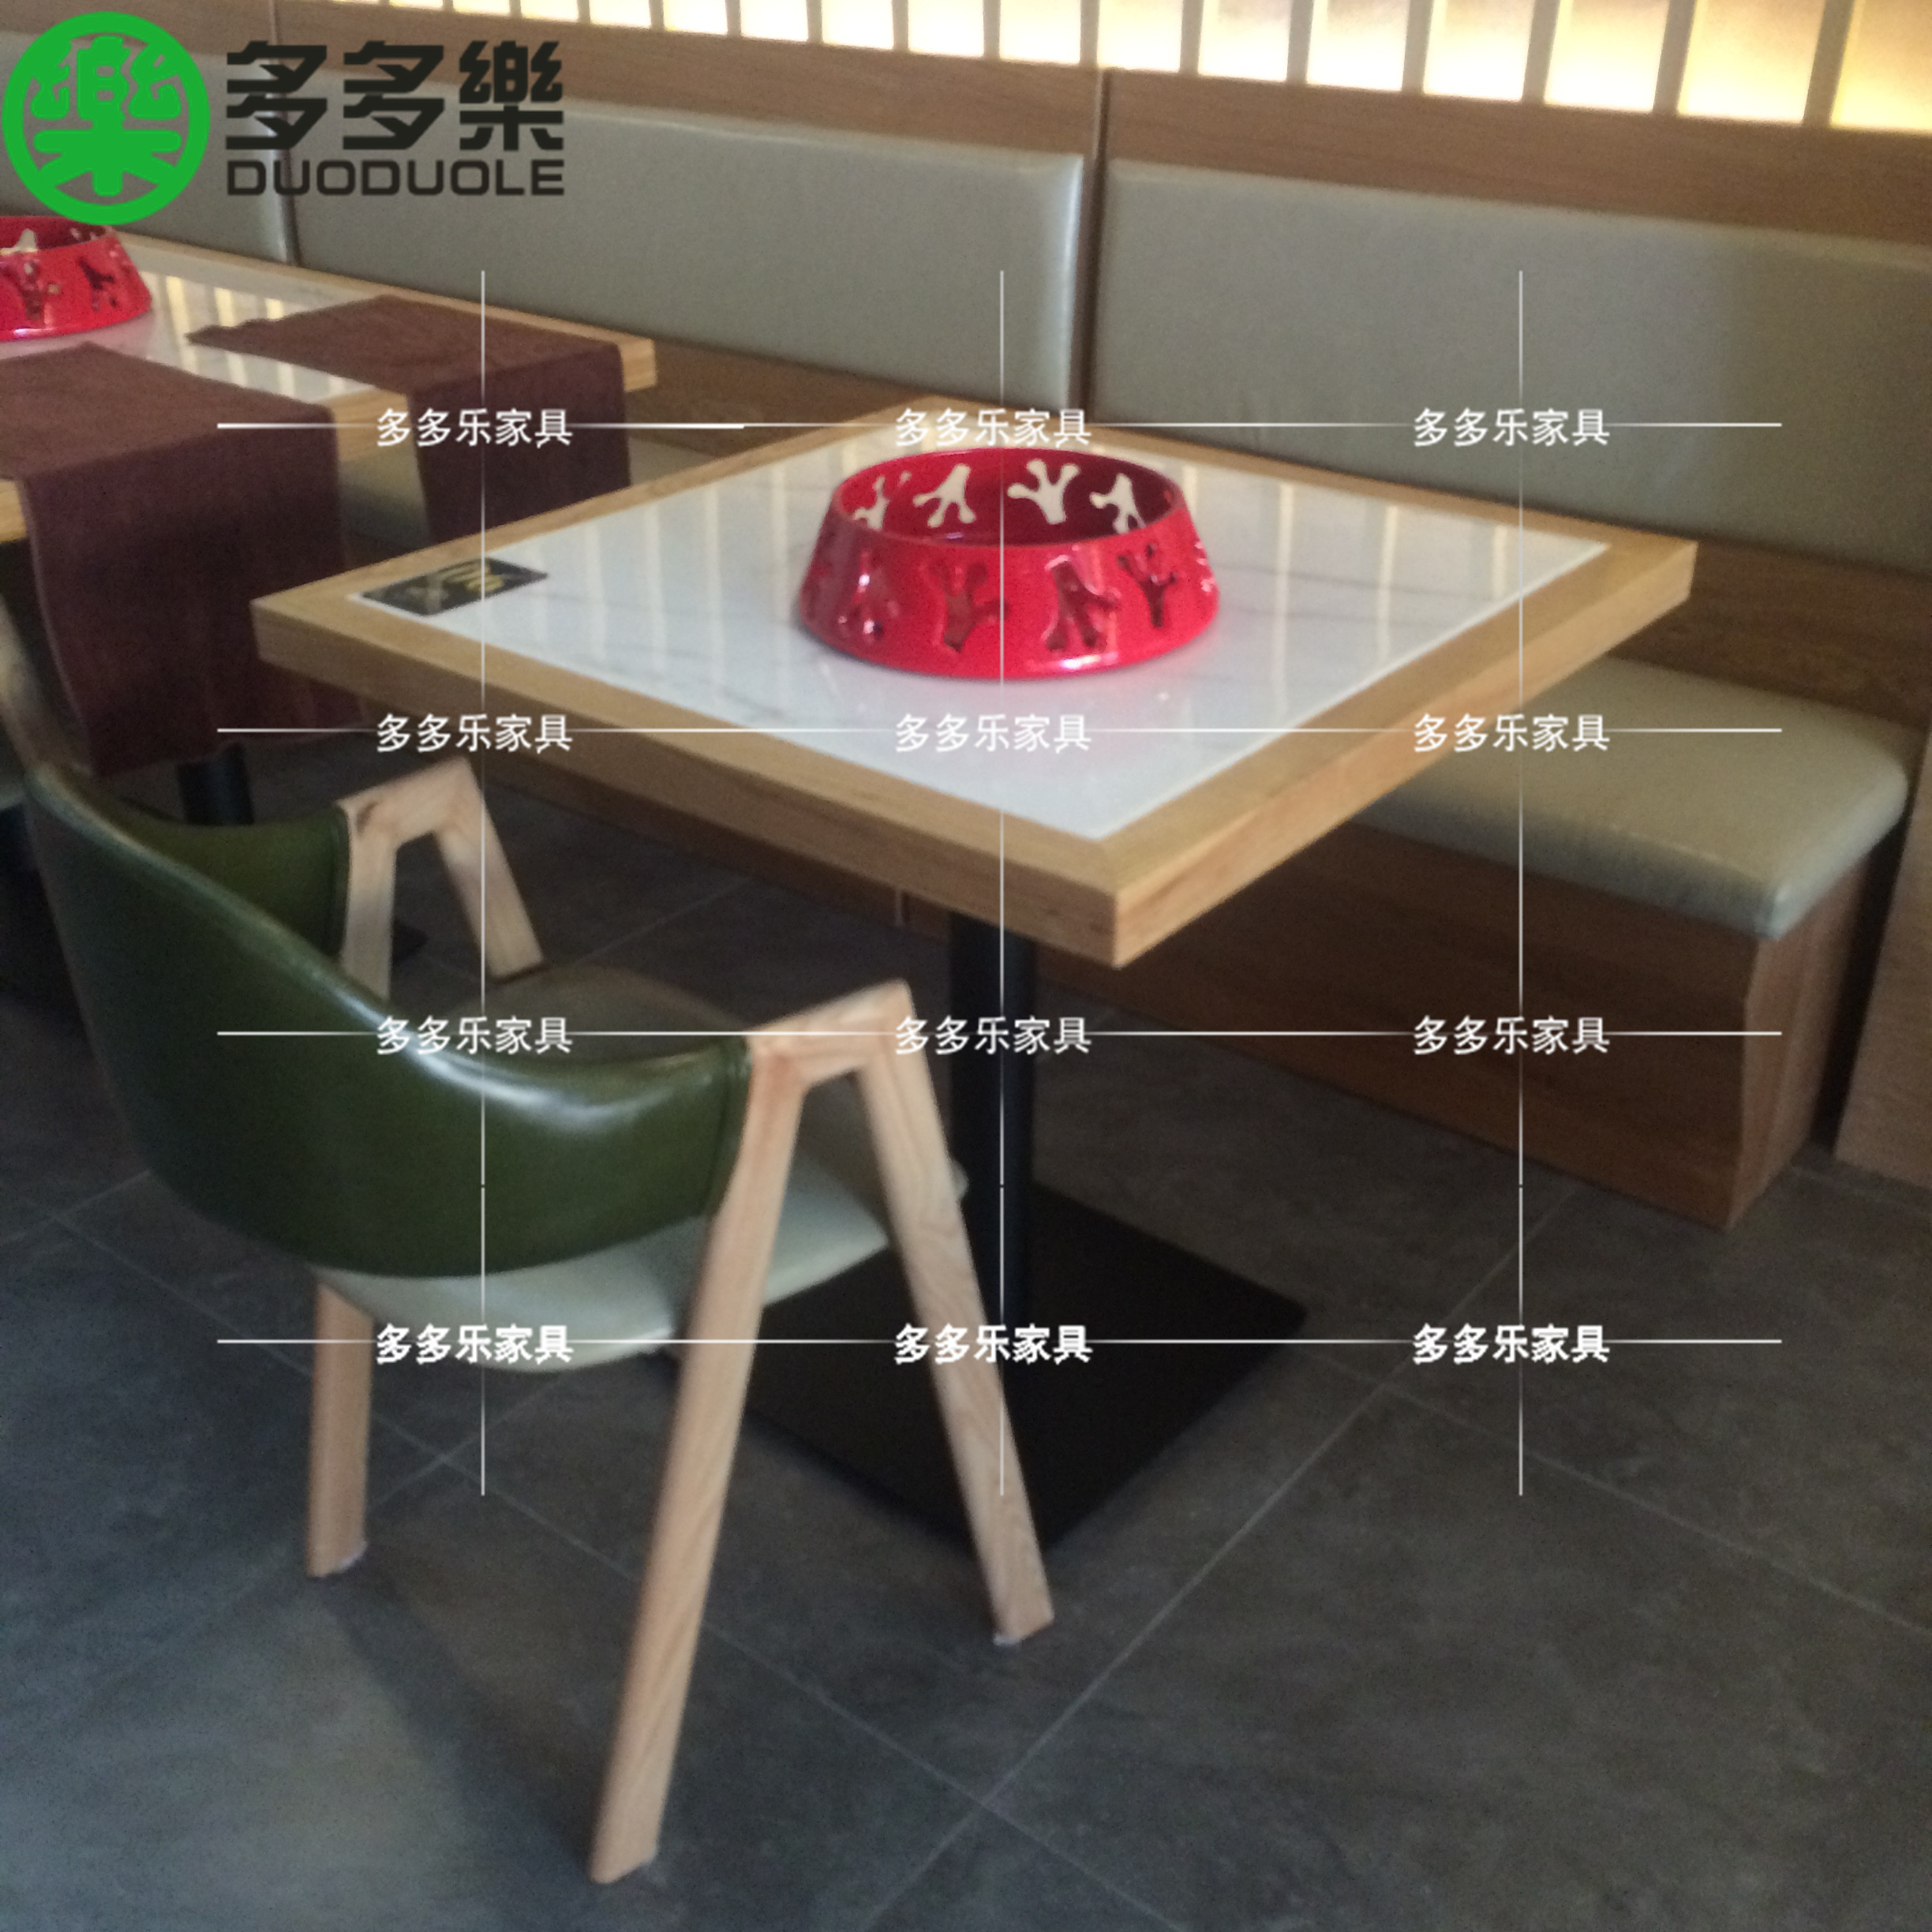 现代简约实木餐桌椅供应 新中式餐饮家具定做厂家5